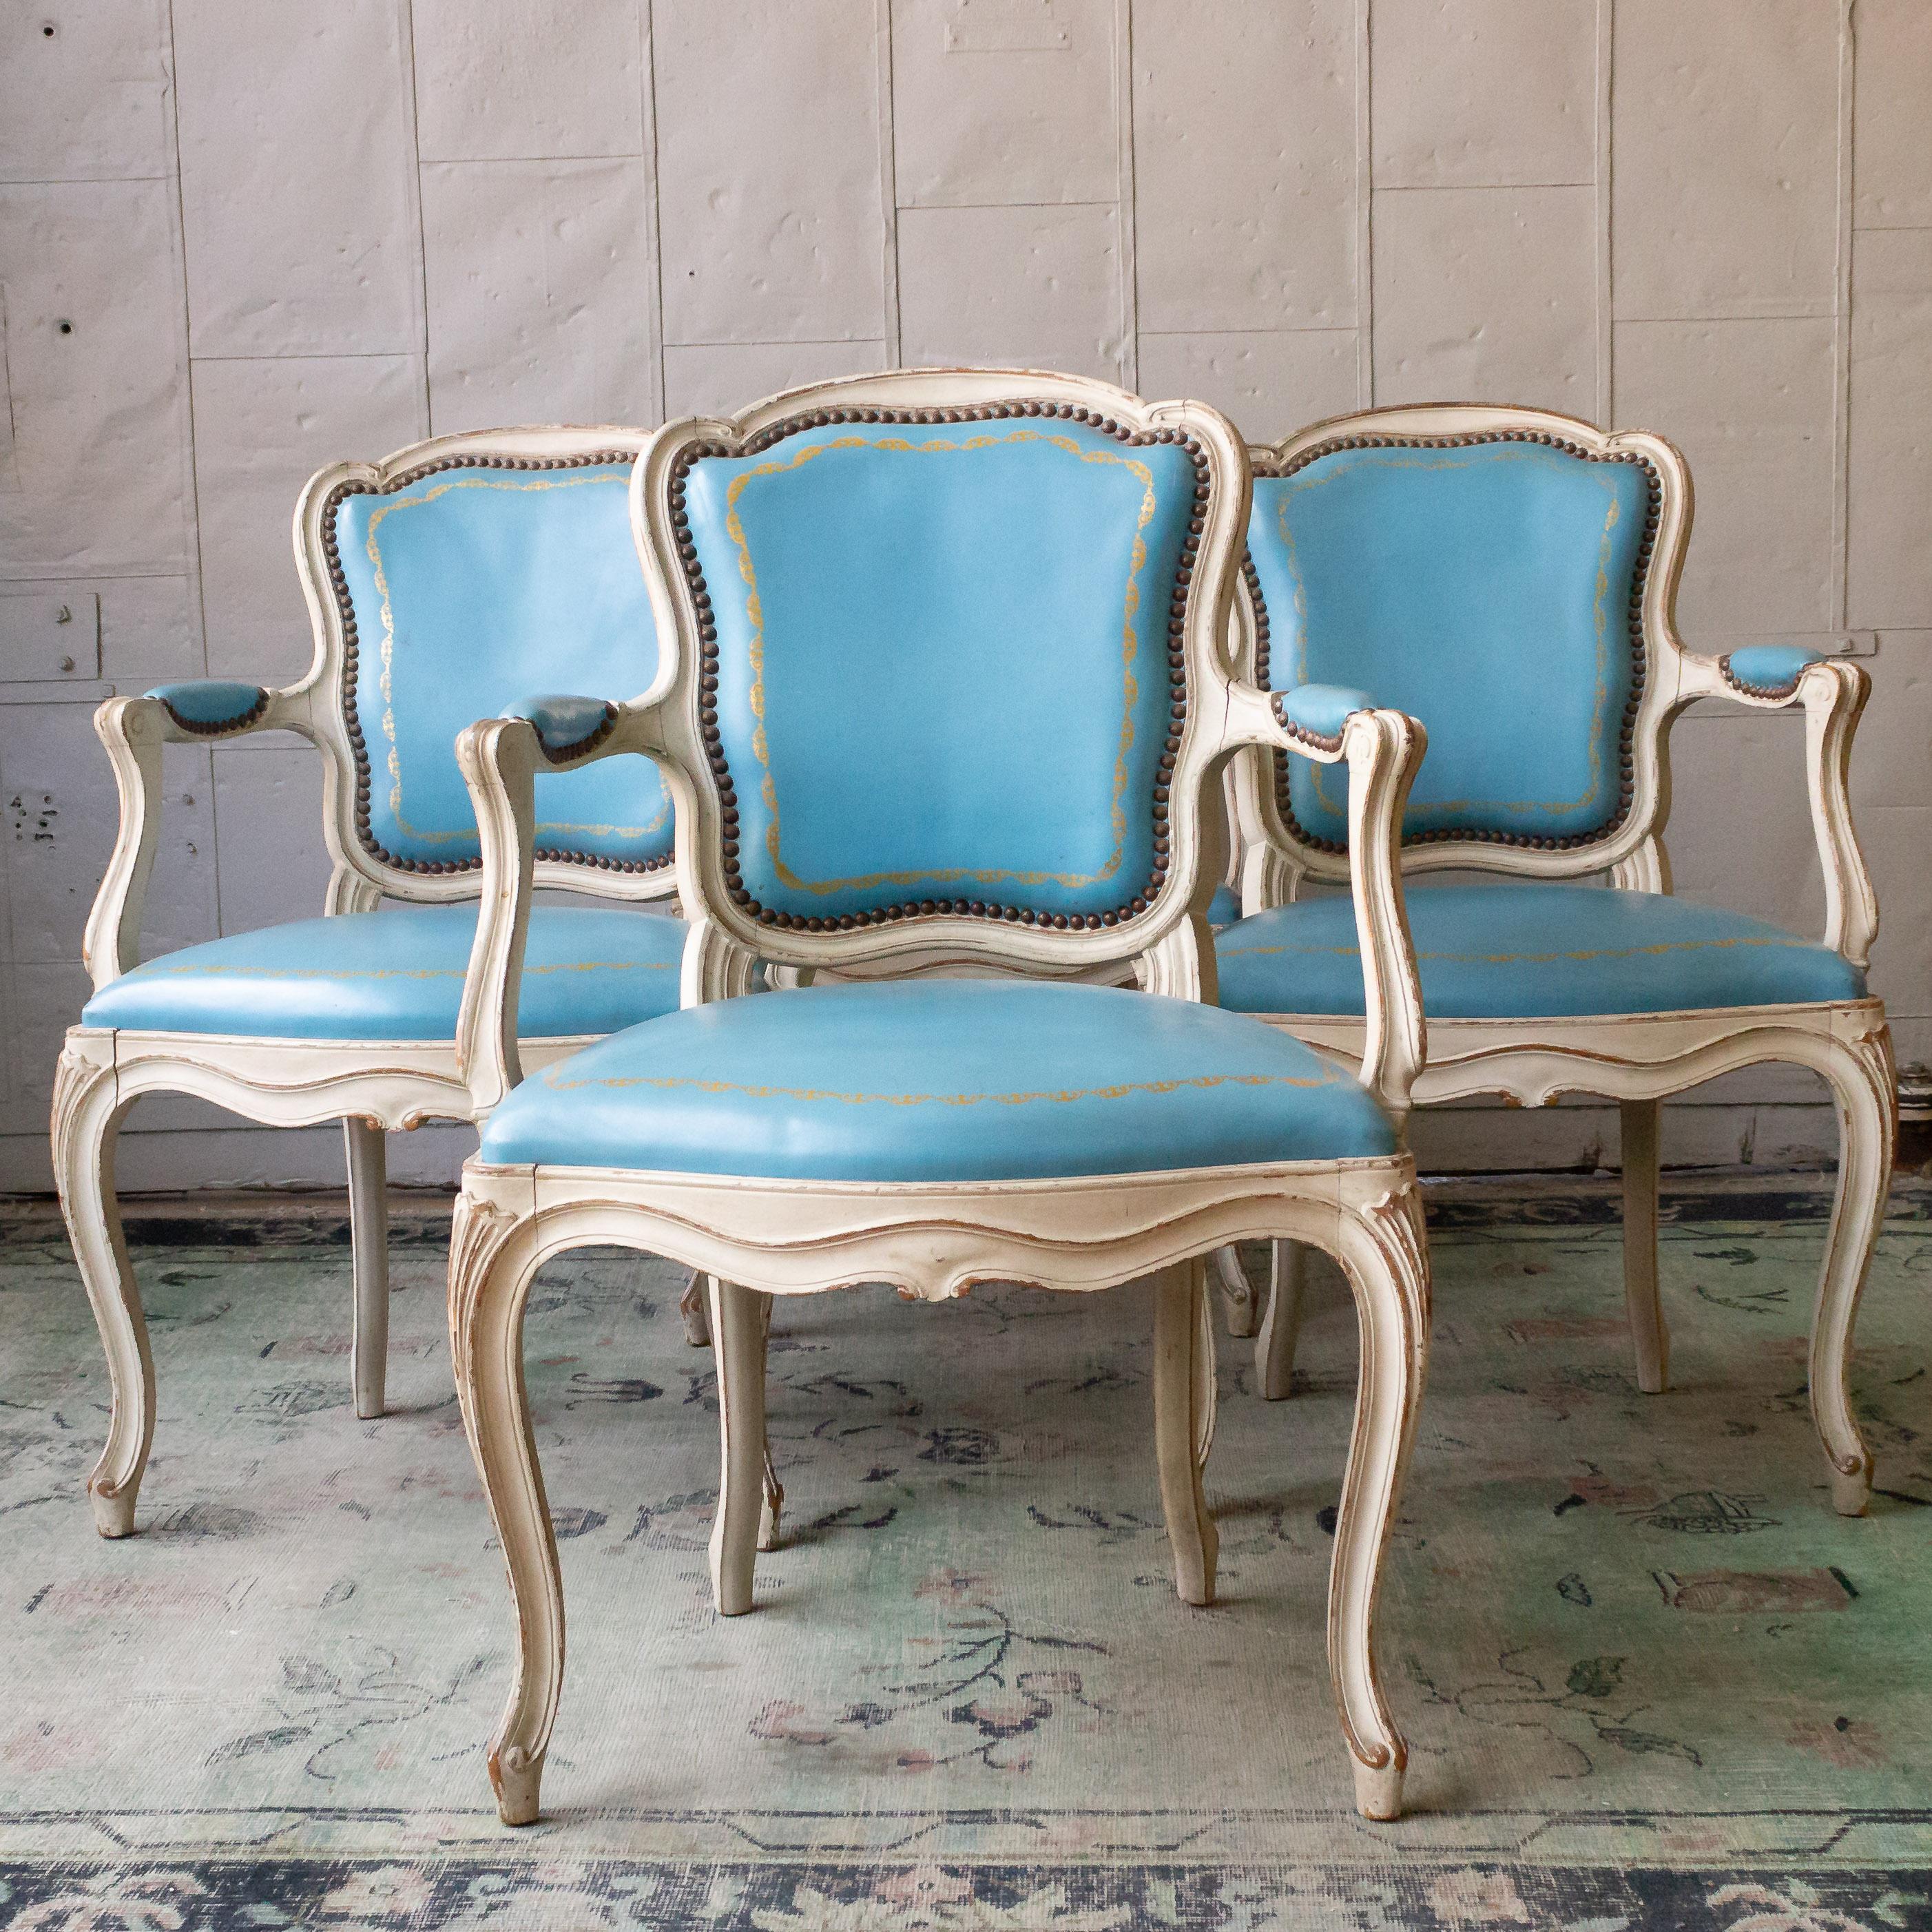 Un élégant ensemble de quatre fauteuils de style Louis XV en cuir bleu clair et cadres patinés blancs. Avec cette combinaison séduisante de design français classique et de riche revêtement en cuir bleu, ces chaises sont idéales pour apporter une